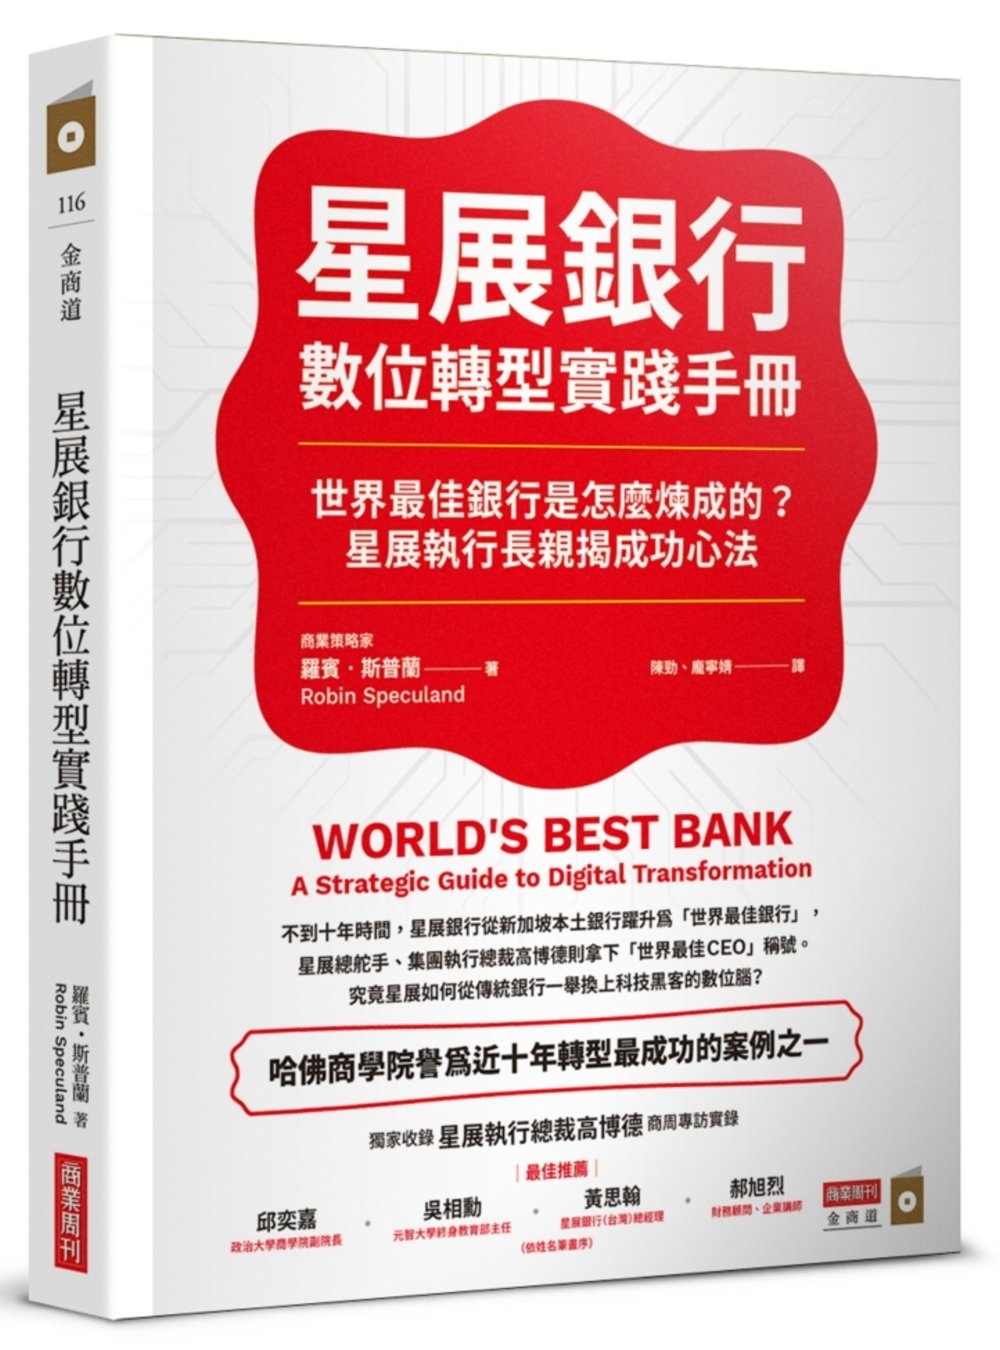 星展銀行數位轉型實踐手冊：世界最佳銀行是怎麼煉成的？星展執行...